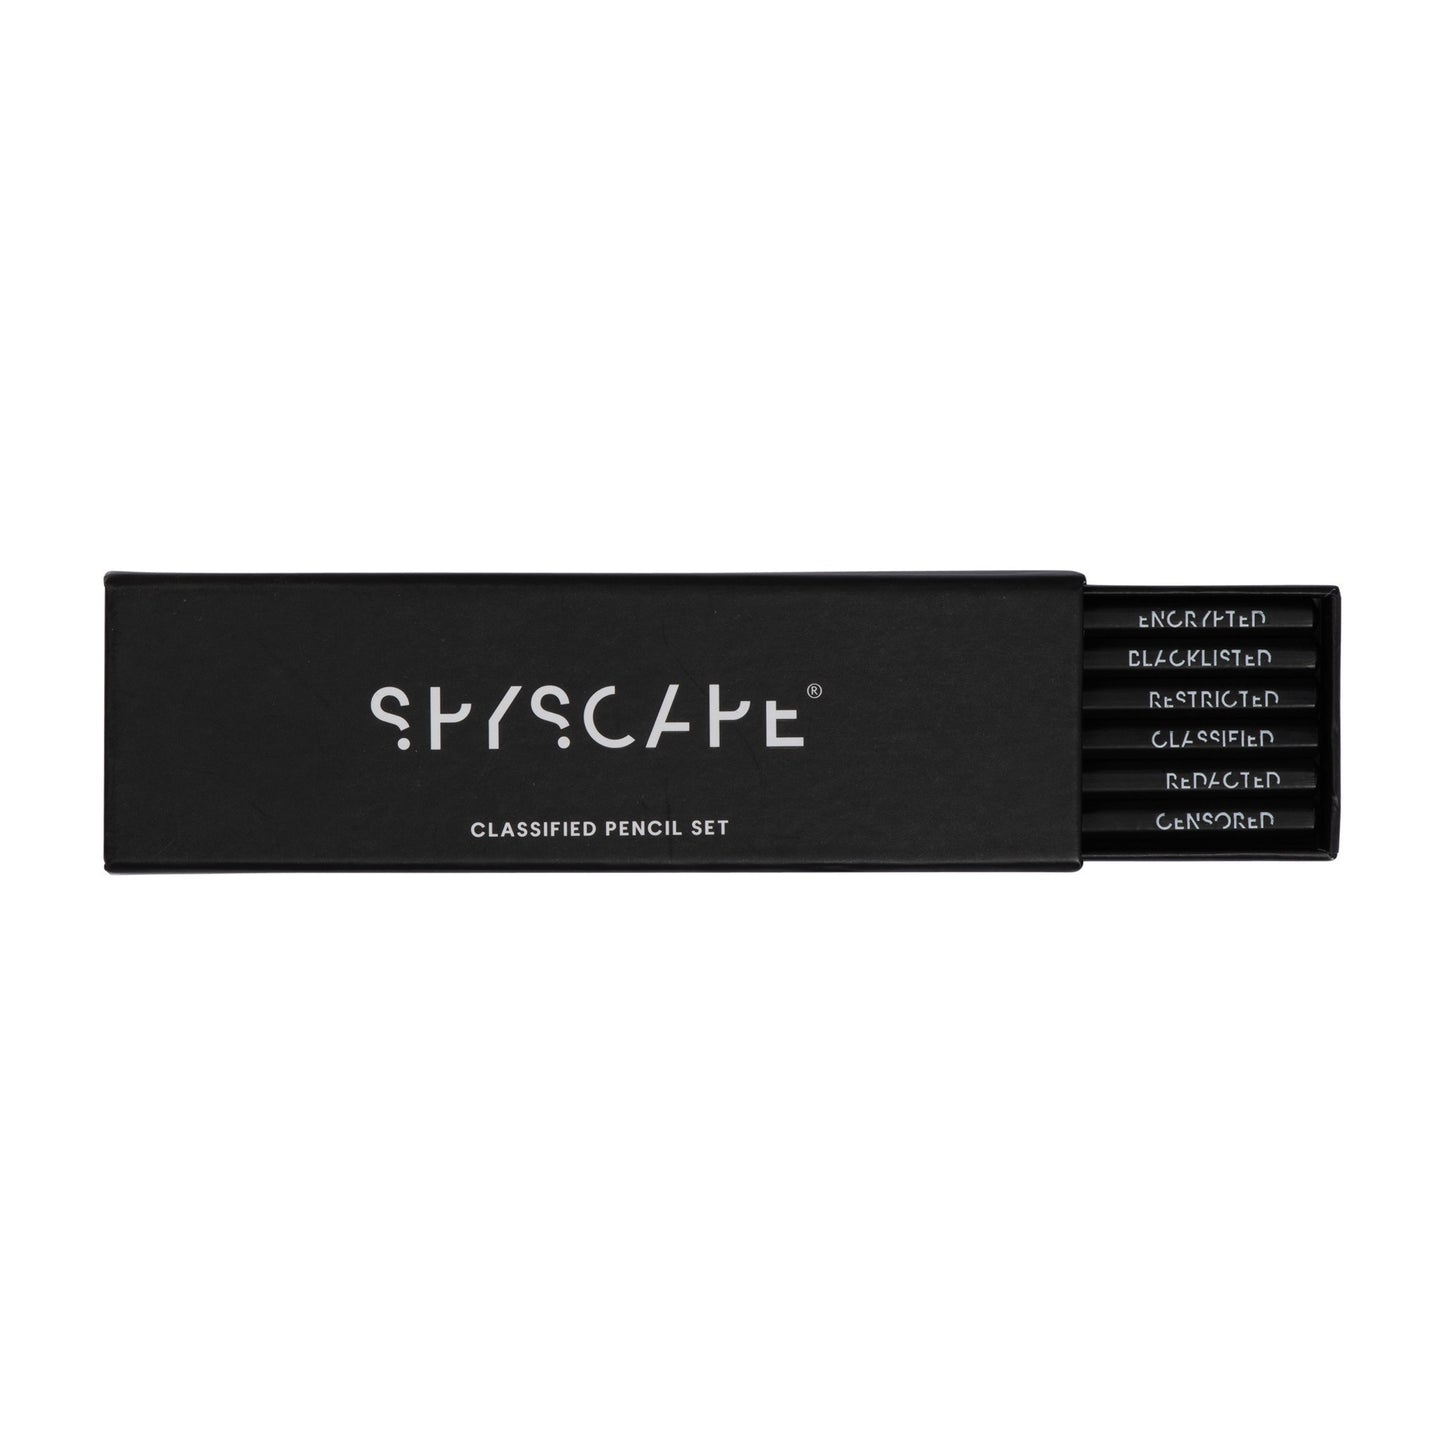 SPYSCAPE Classified Pencil Set - 